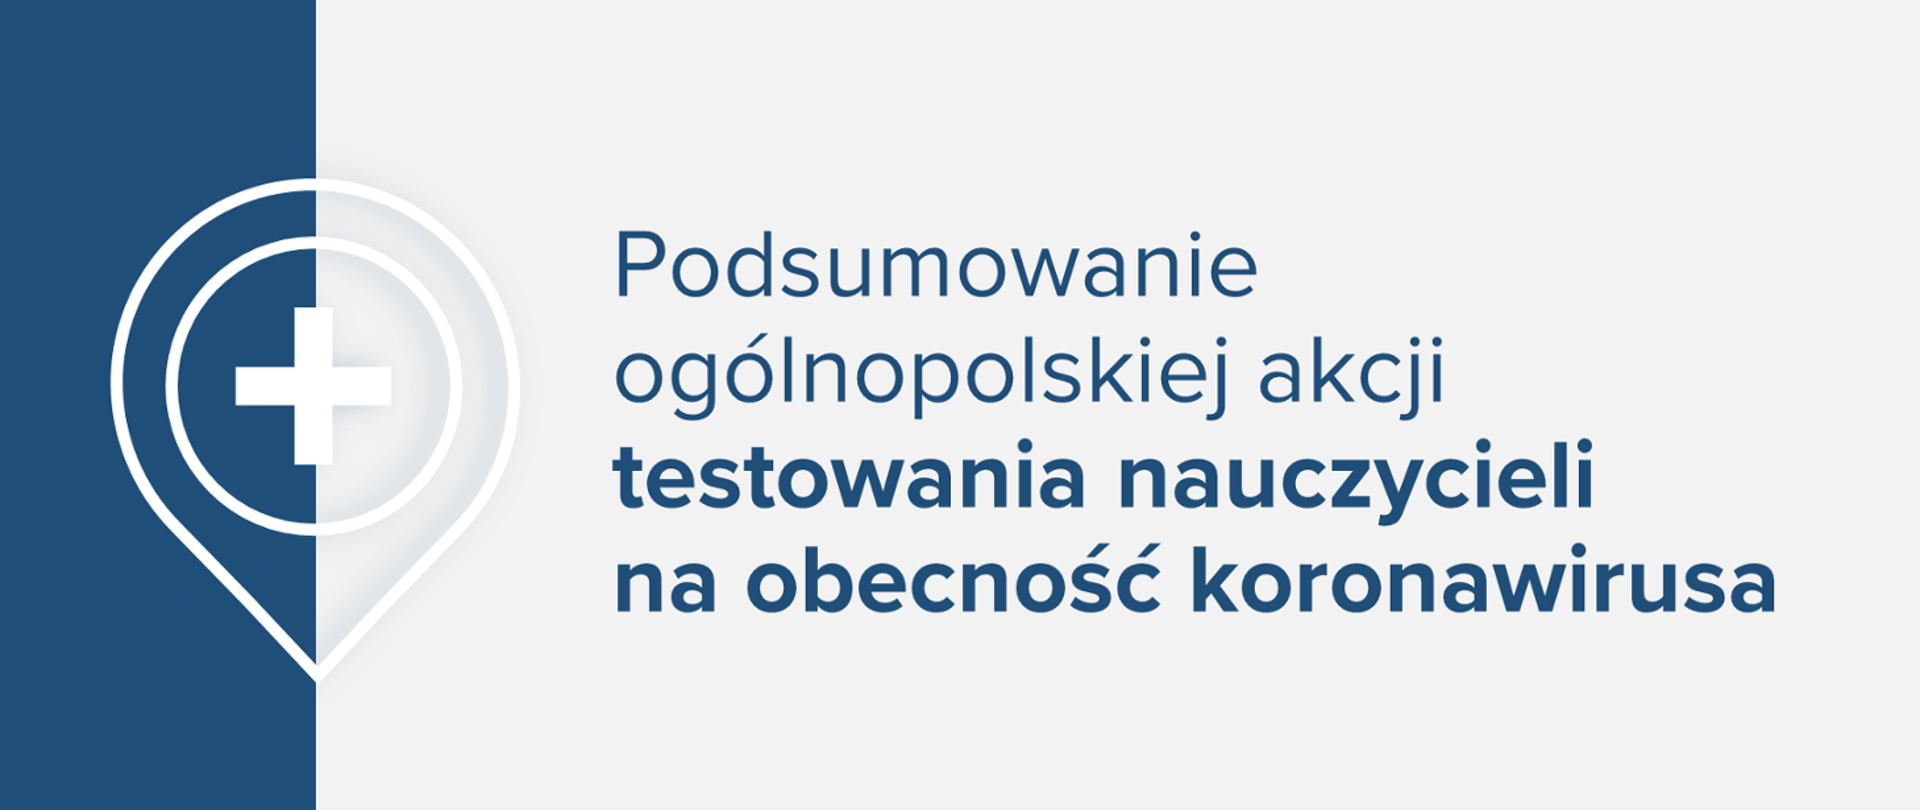 Jasna grafika z tekstem "Podsumowanie ogólnopolskiej akcji testowania nauczycieli na obecność koronawirusa"